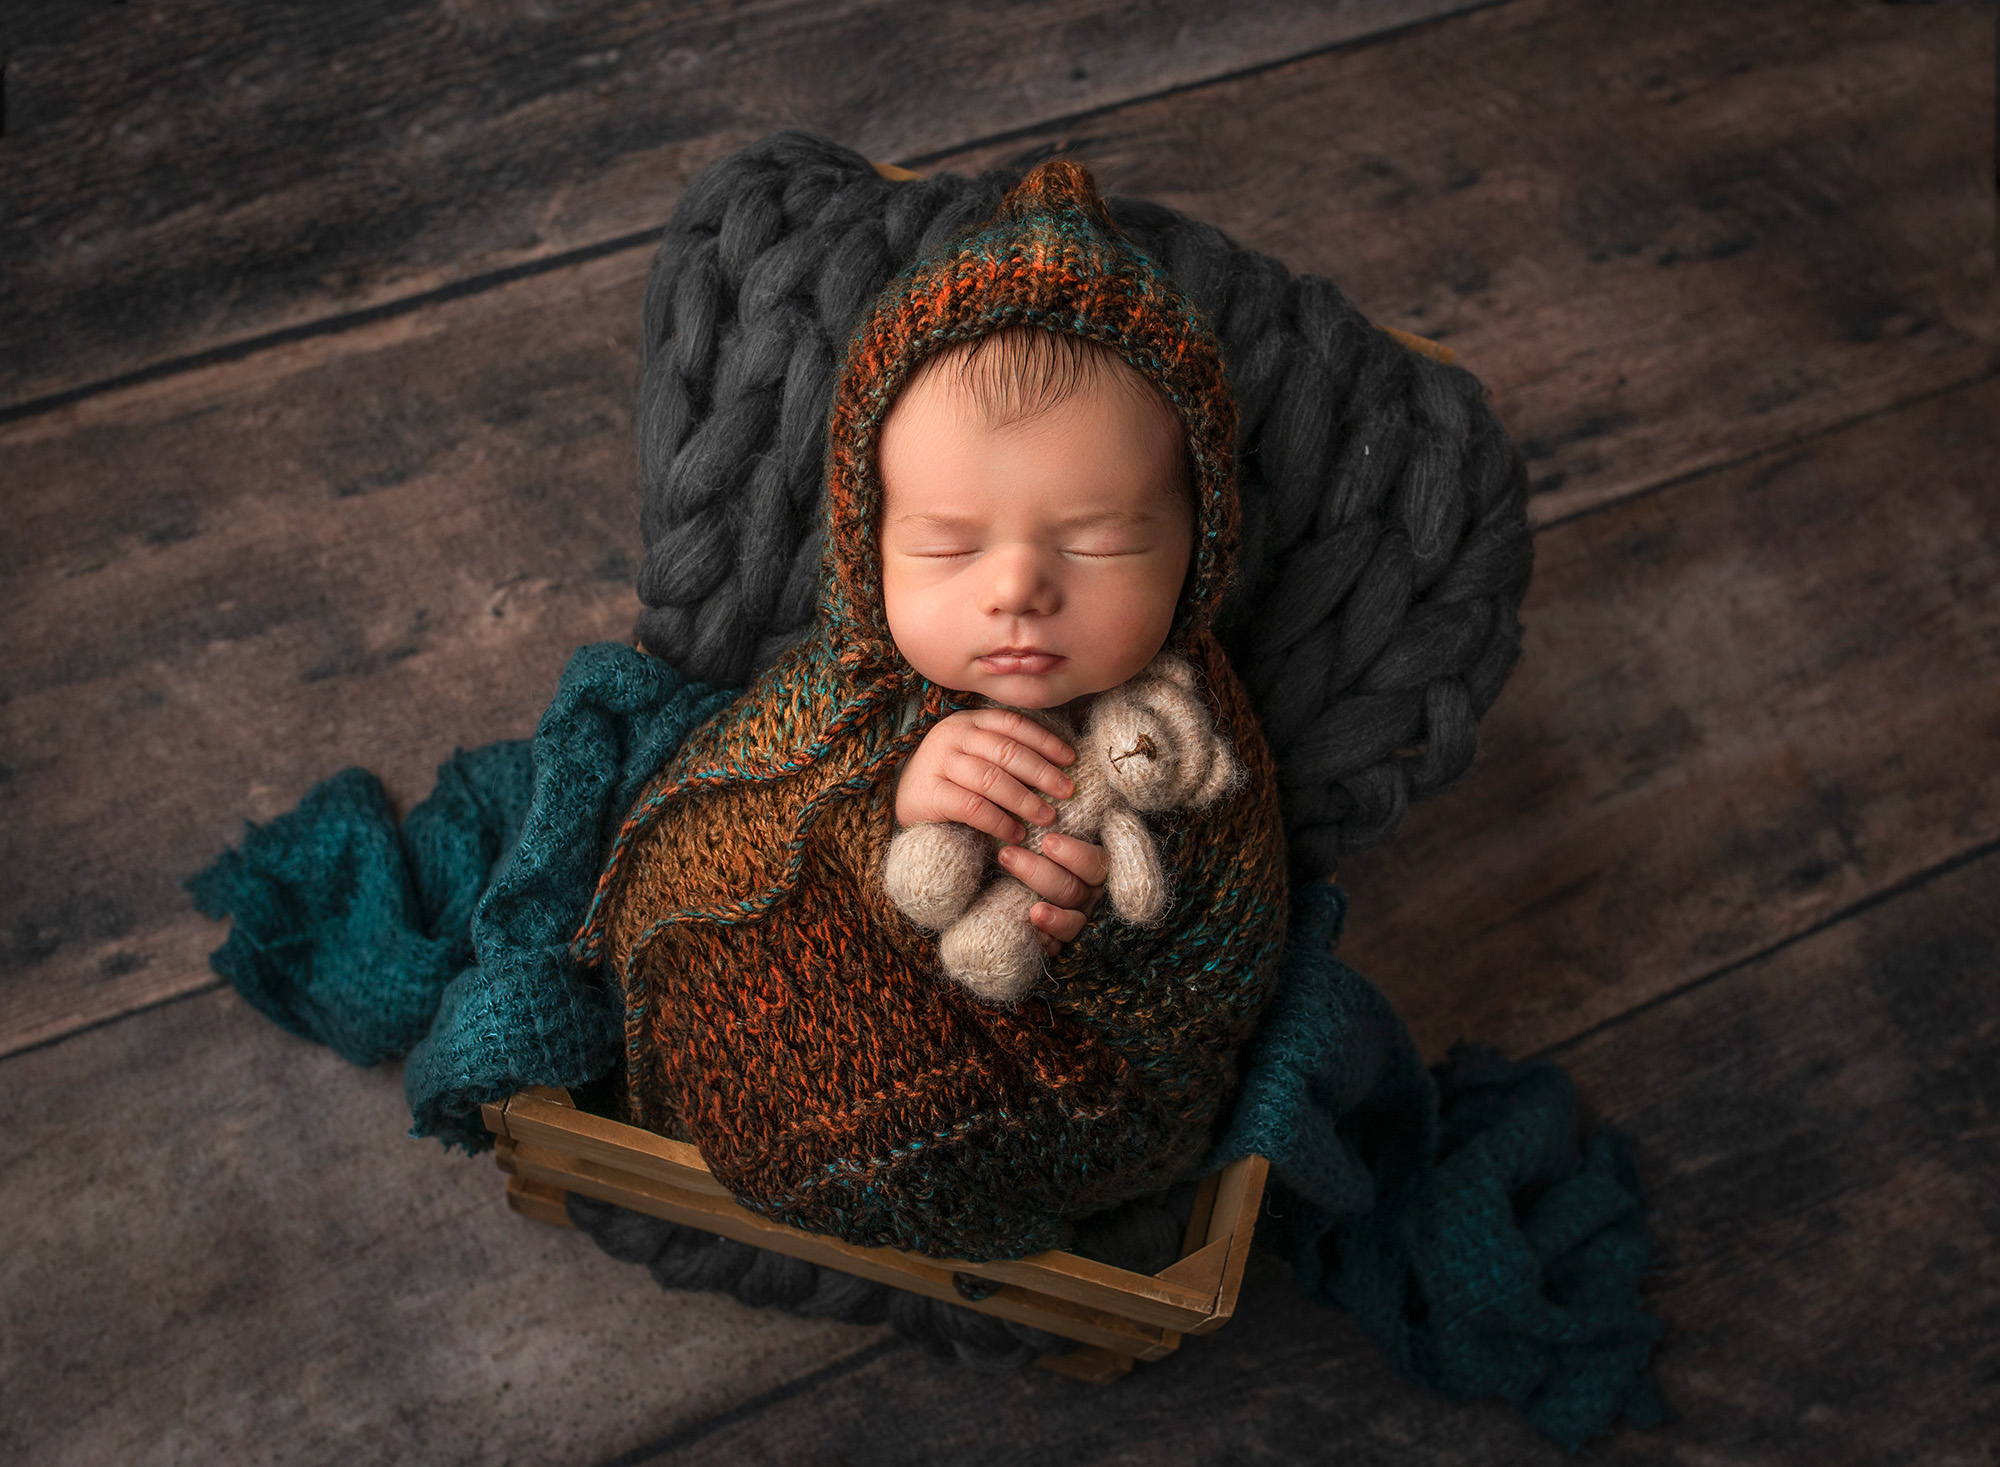 newborn baby boy sleeping in a crate holding a teddy bear